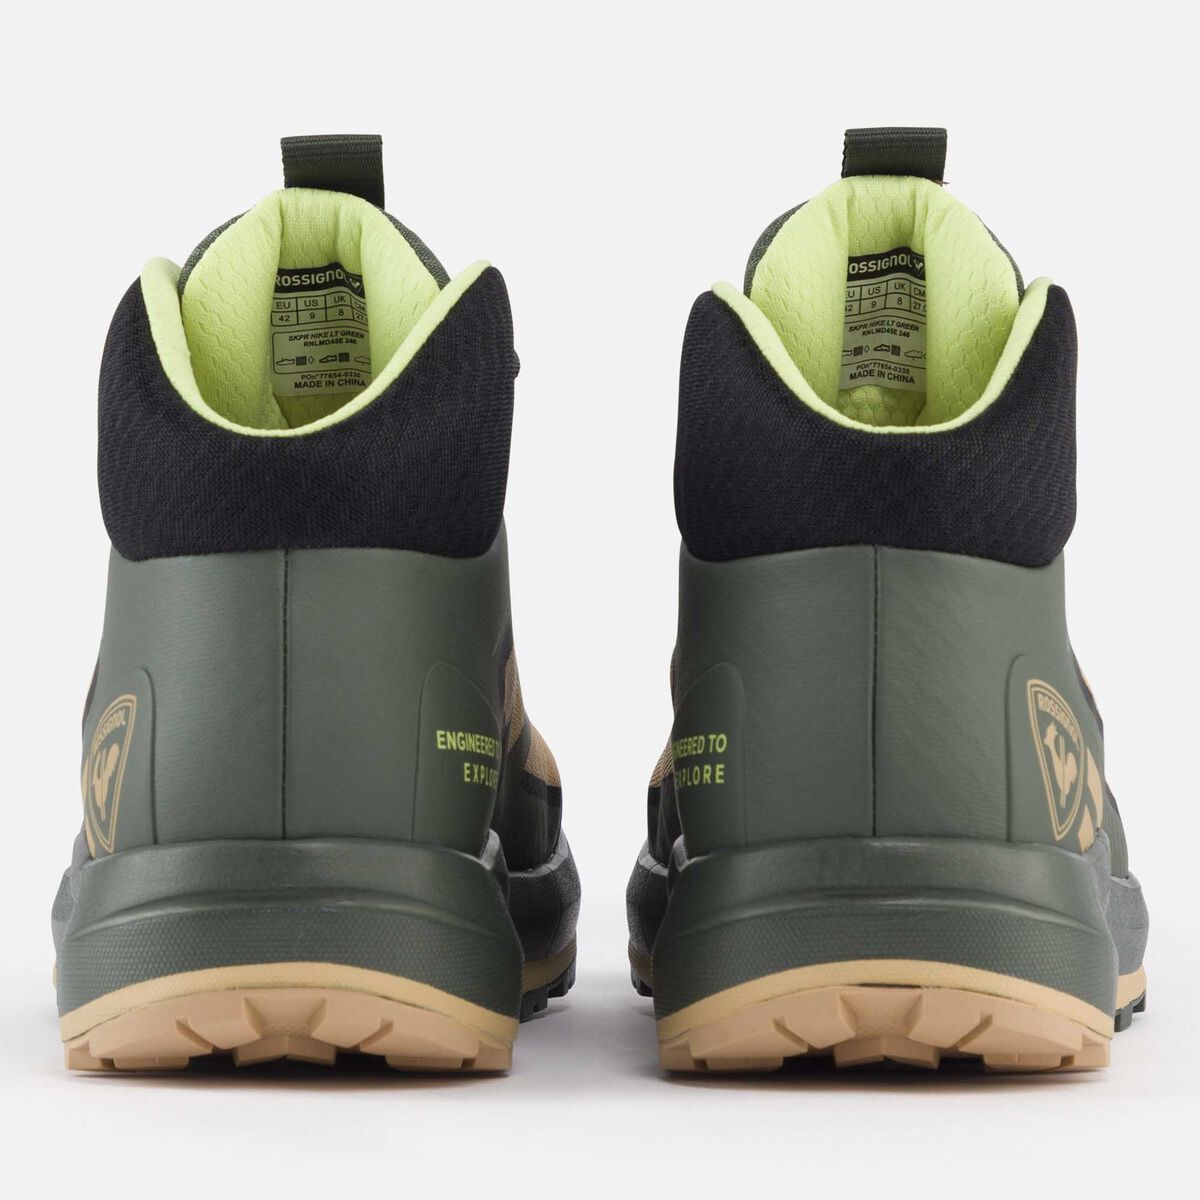 Chaussures de randonnée légères vertes homme